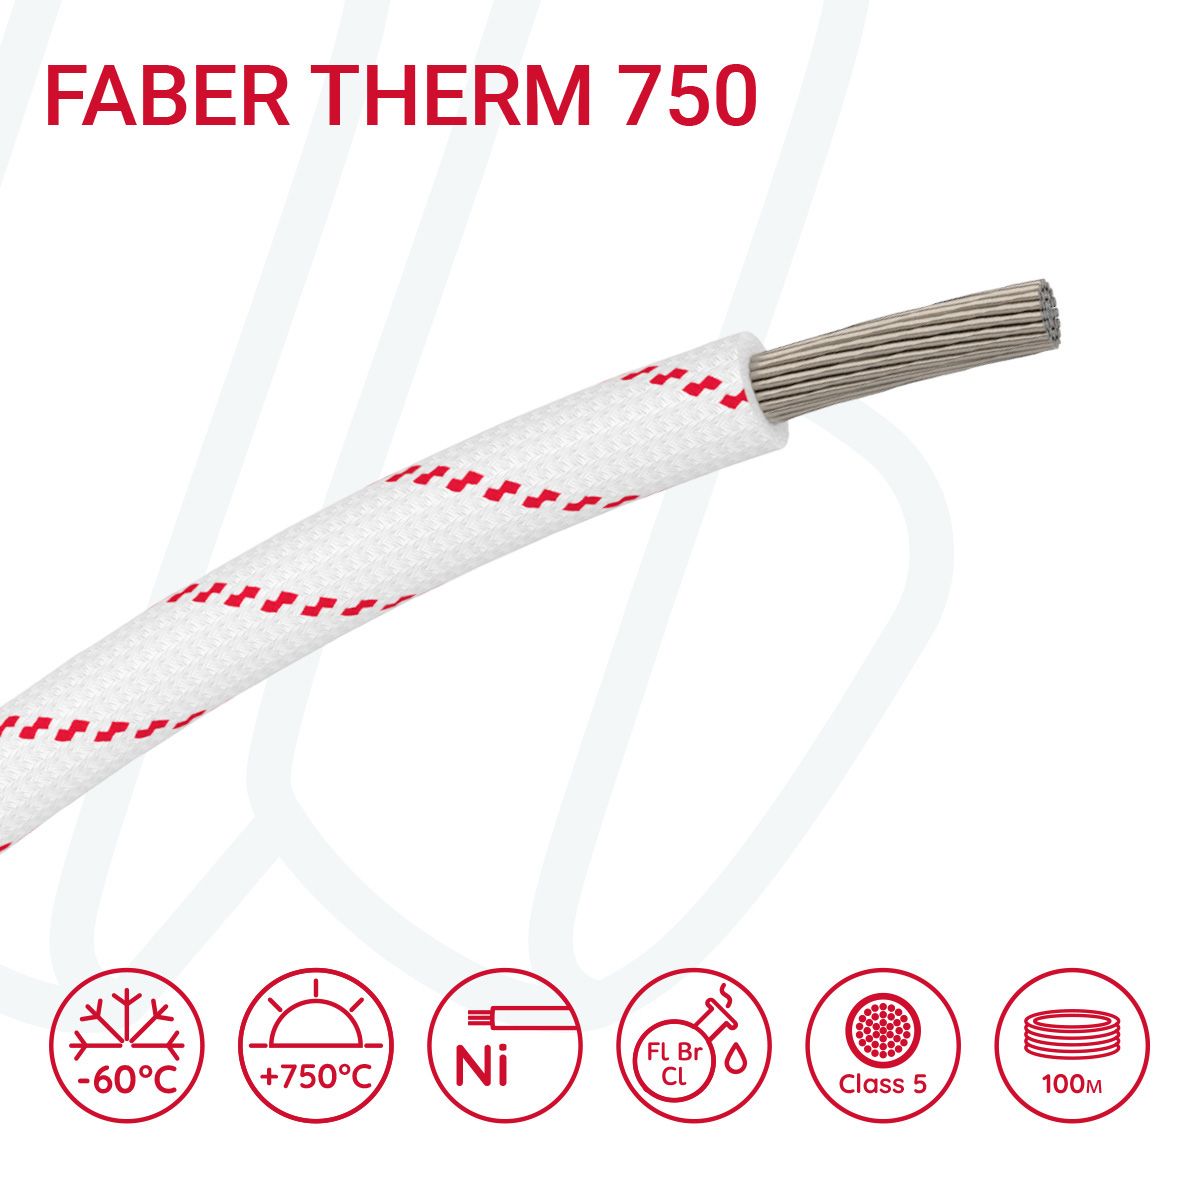 Провід термостійкий FABER THERM 750 01X2.5 в плетінні з червоною ниткою, 01, 2.5